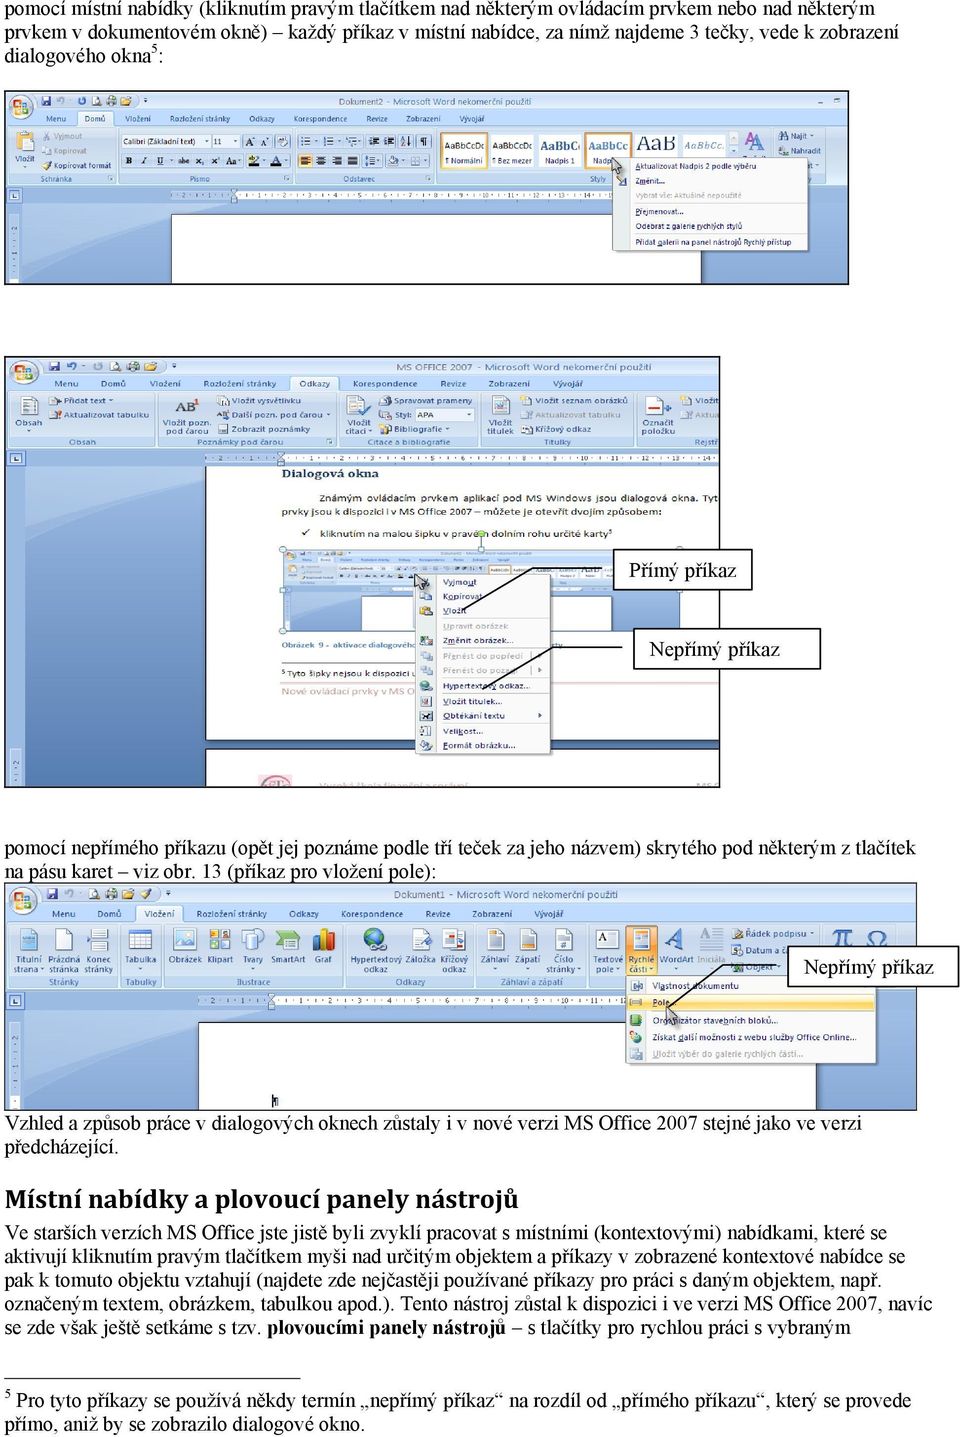 13 (příkaz pro vložení pole): Nepřímý příkaz Vzhled a způsob práce v dialogových oknech zůstaly i v nové verzi MS Office 2007 stejné jako ve verzi předcházející.